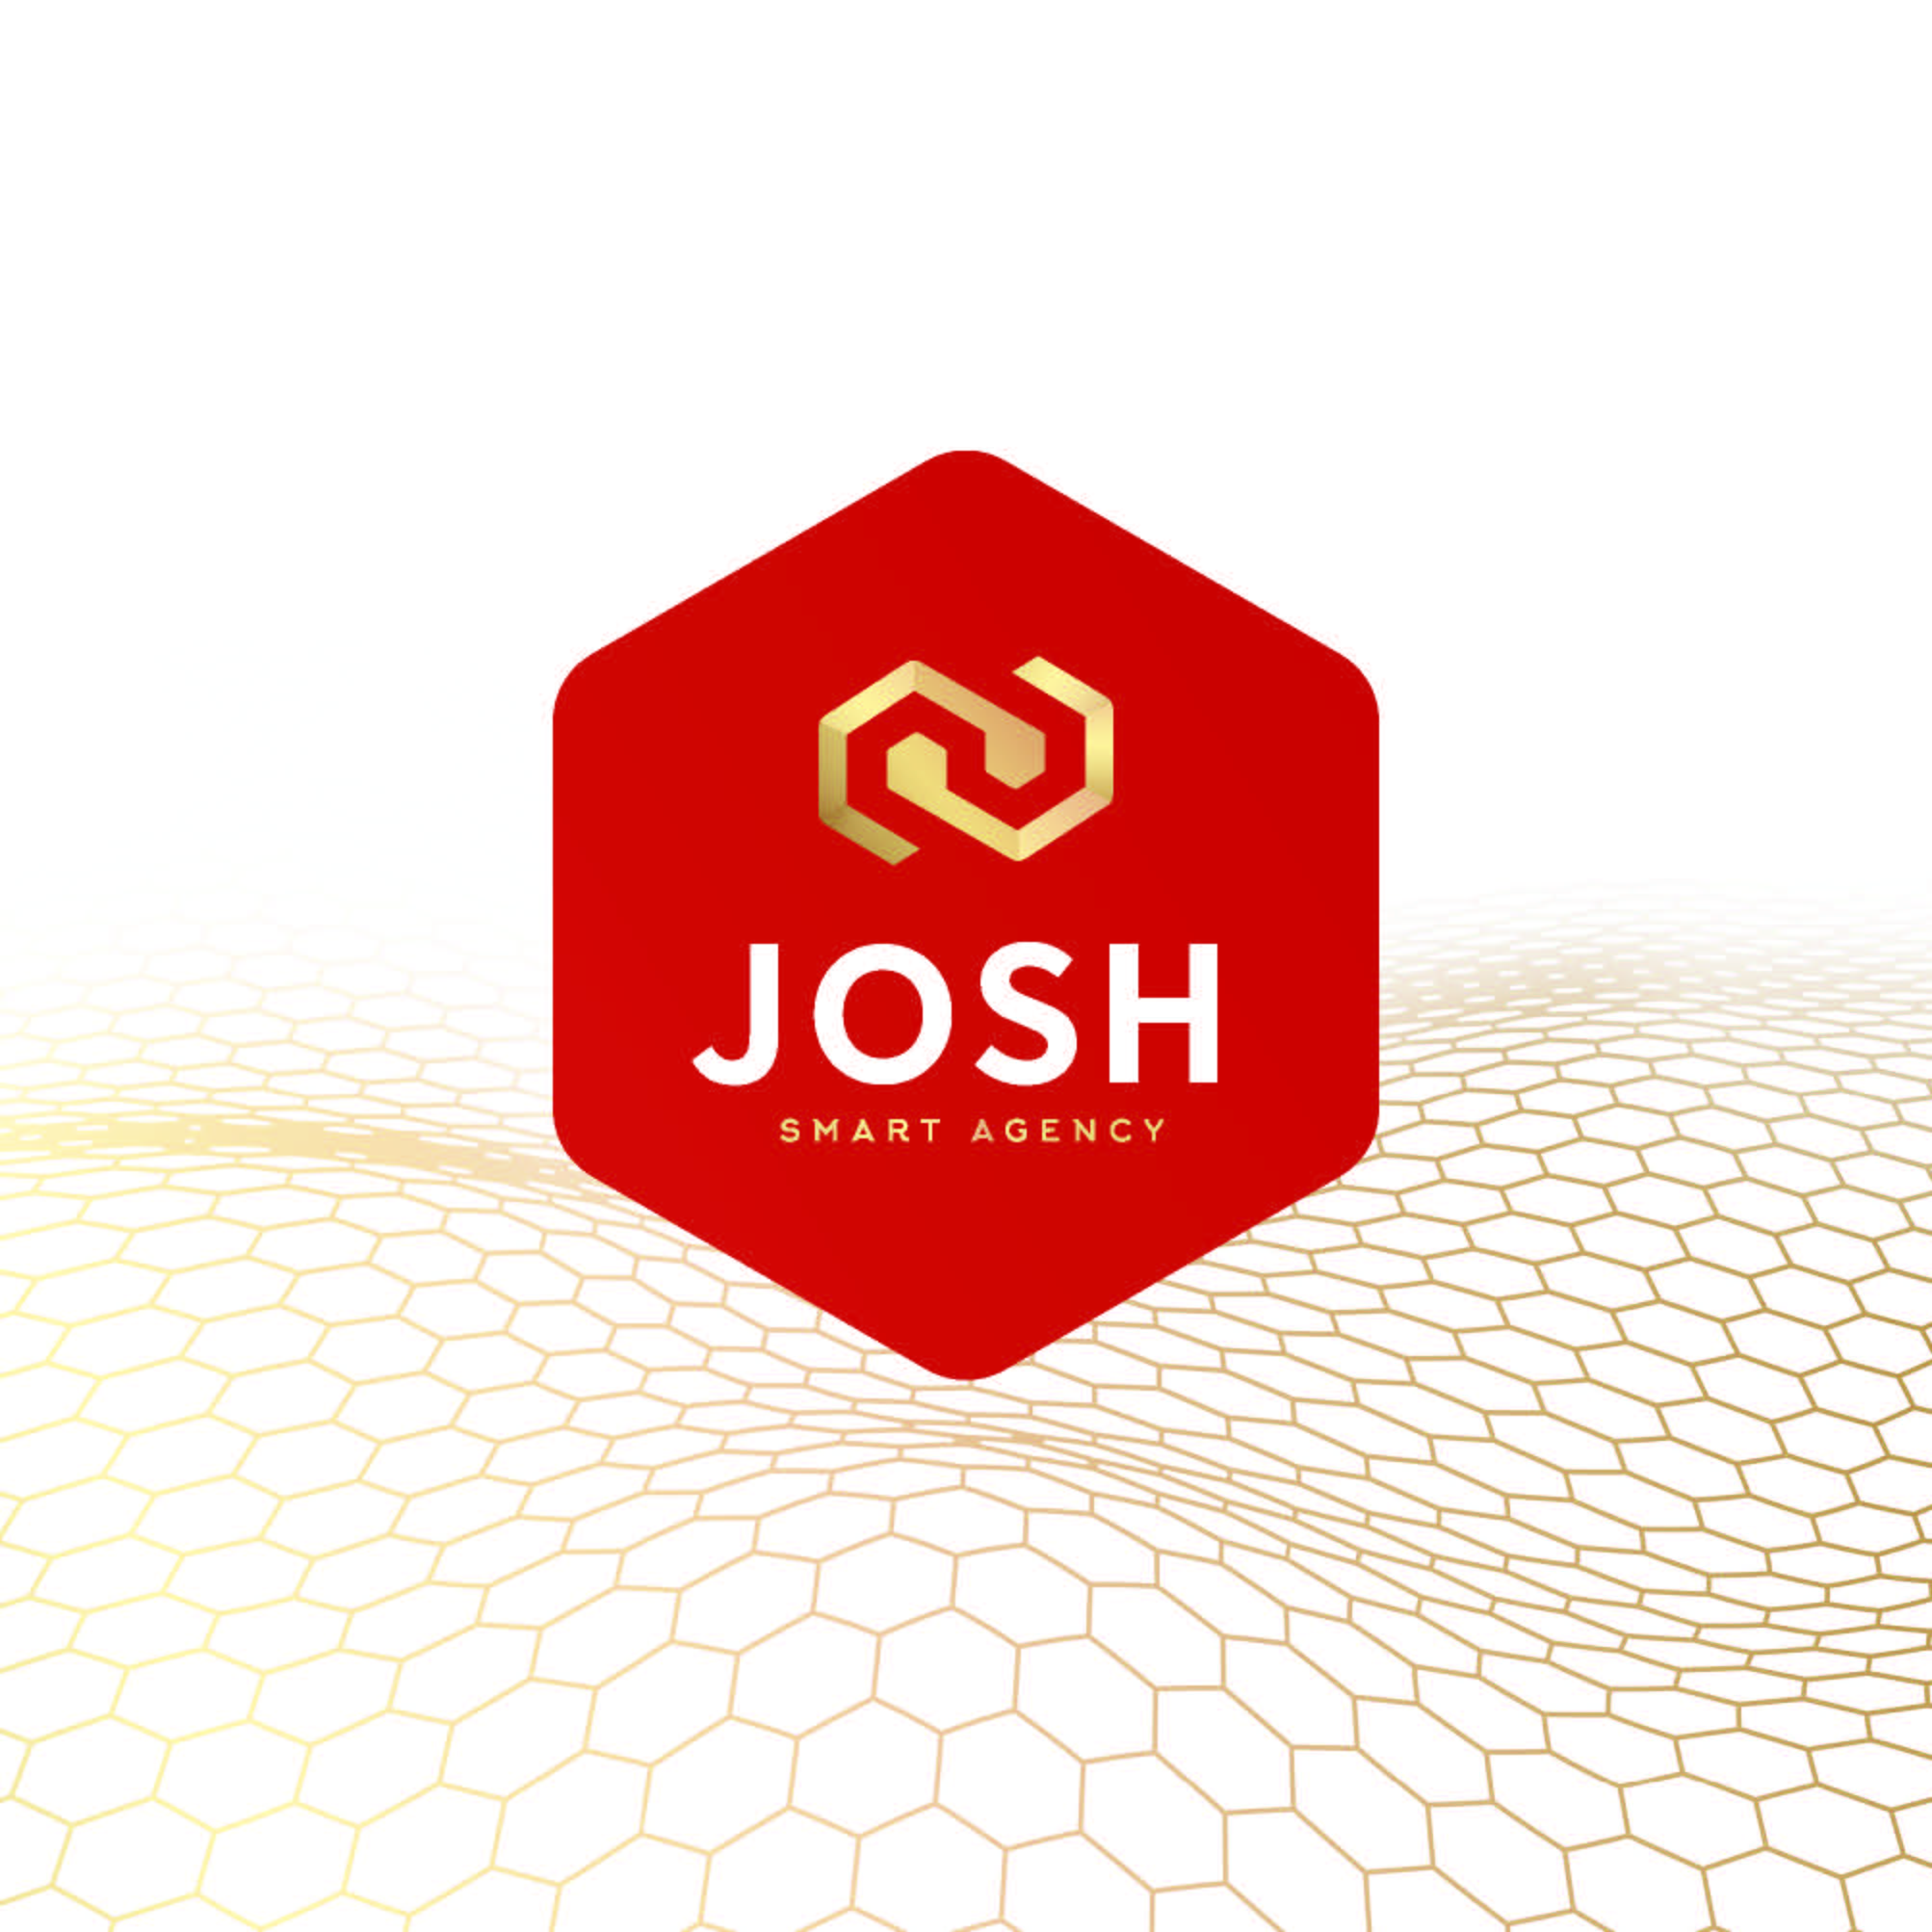 (c) Josh-digital.com